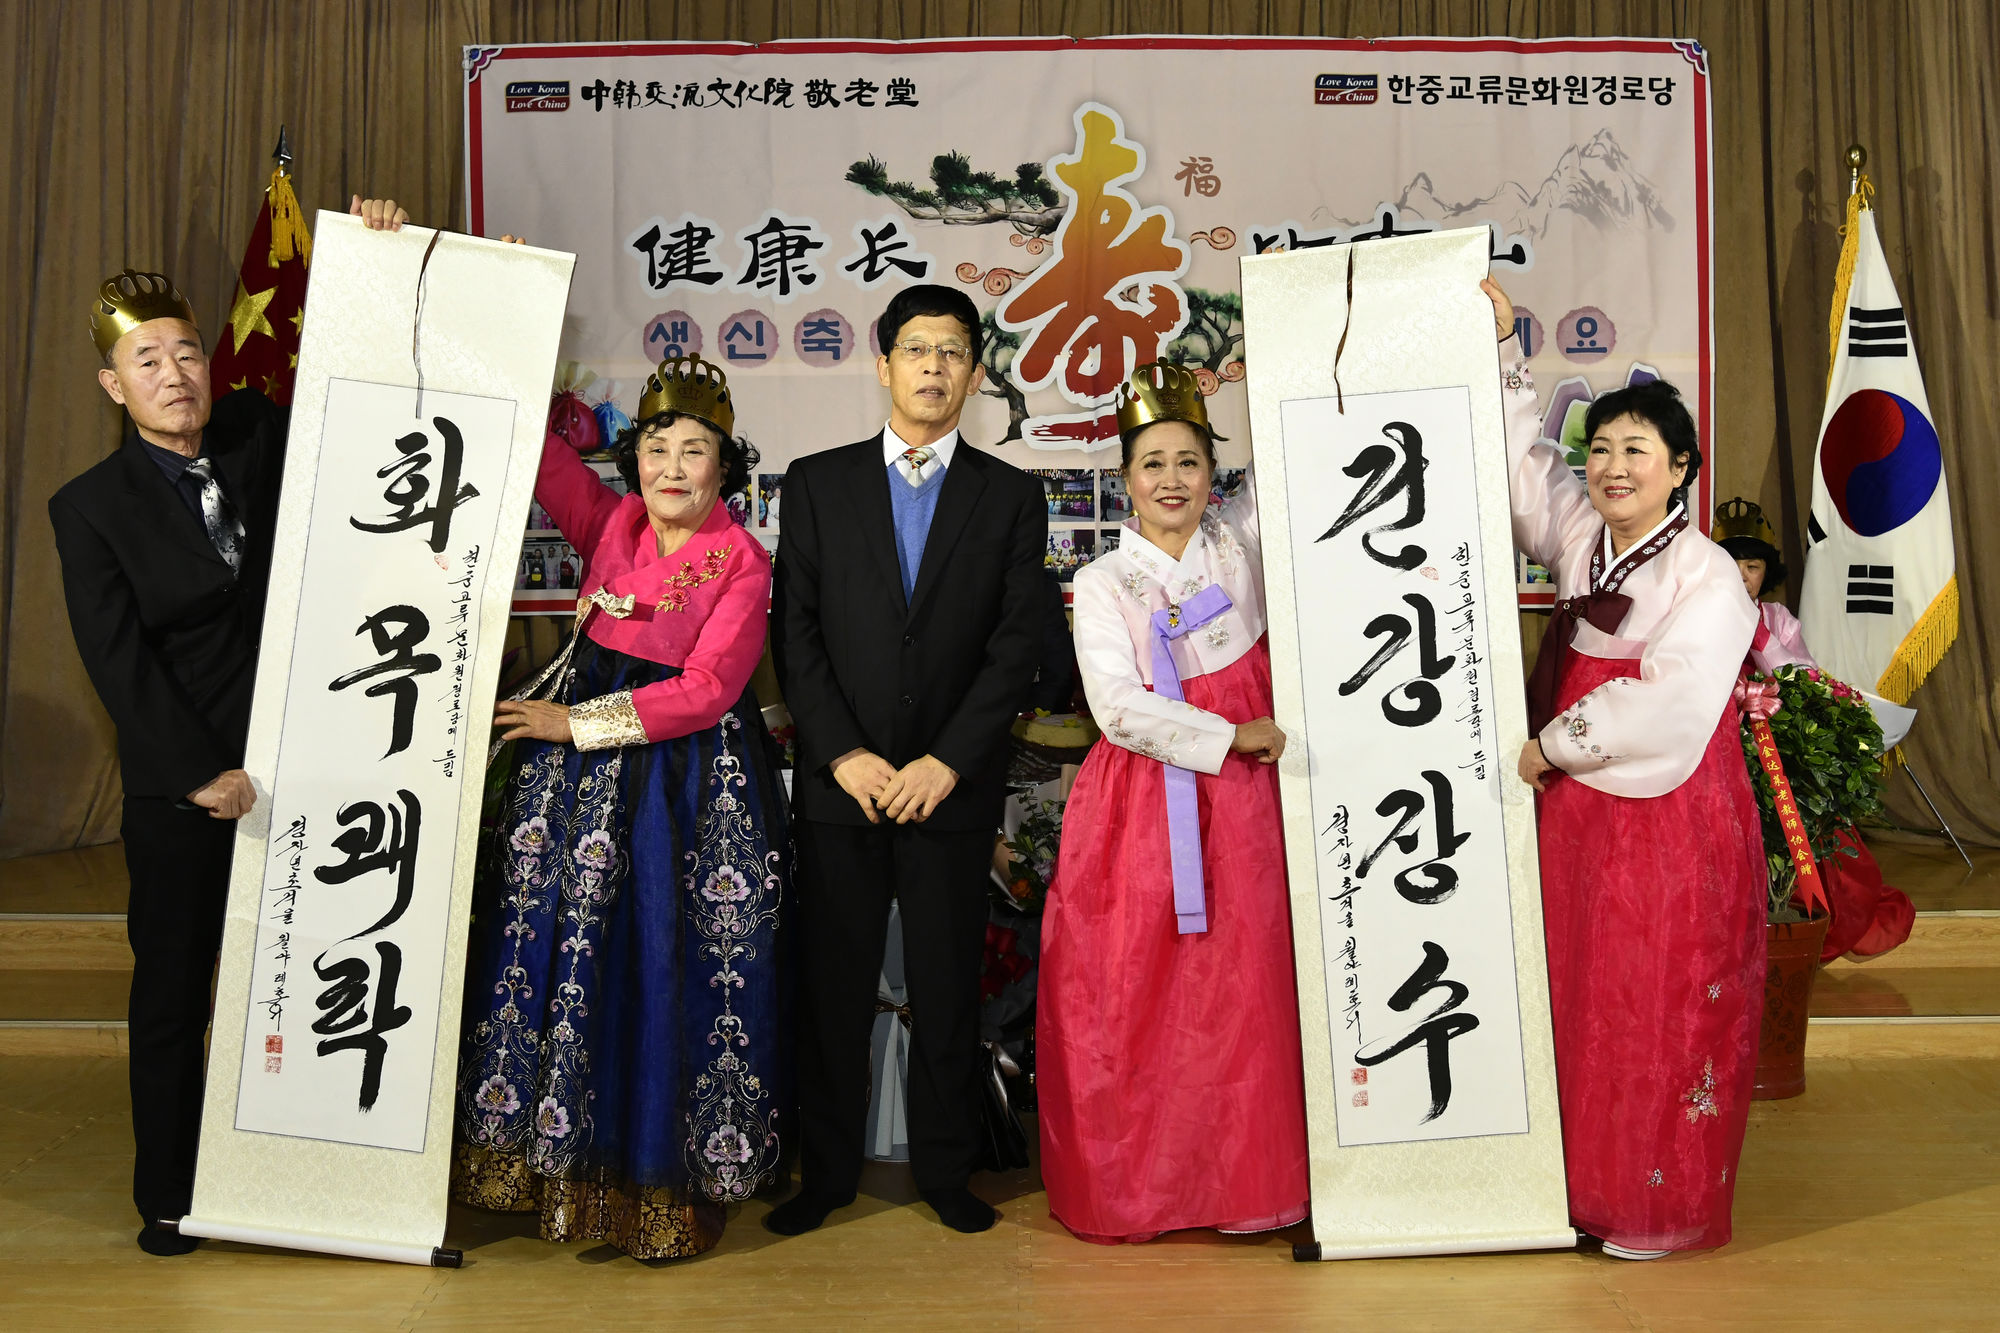 中国高校校报记者团赴韩国开展文化交流活动